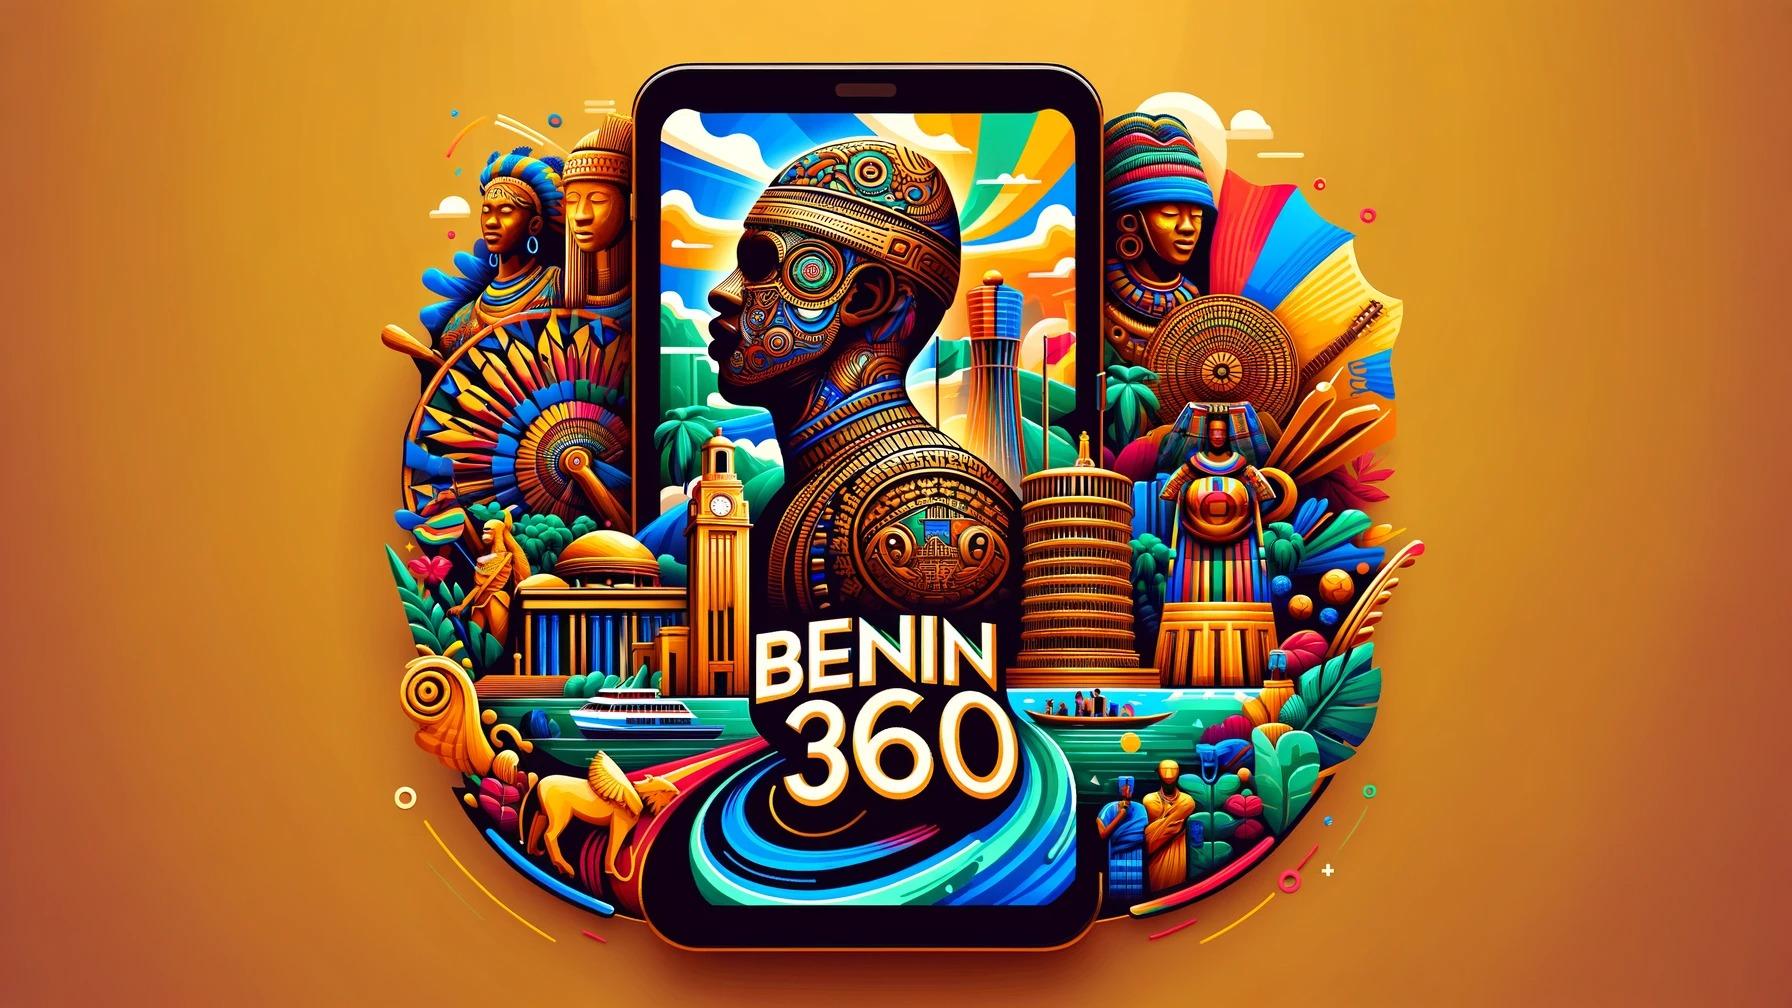 Benin360